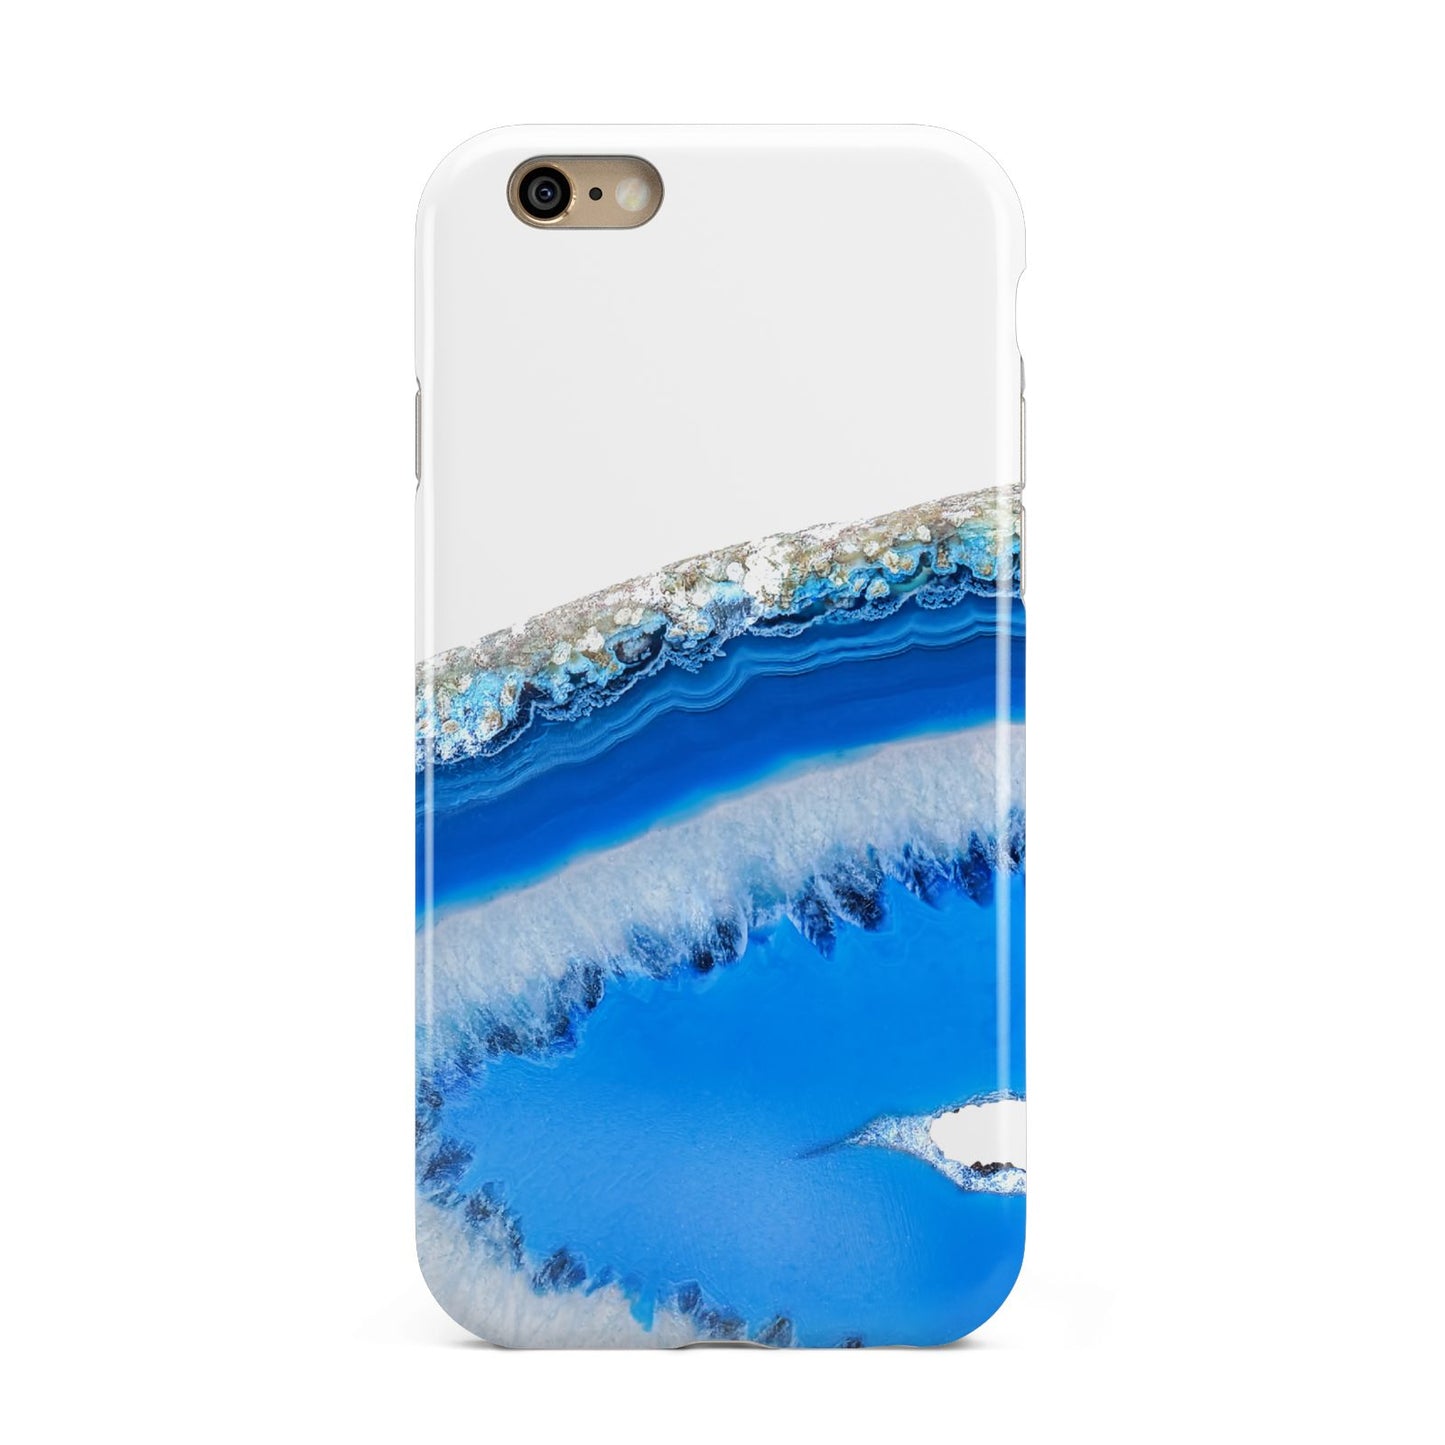 Agate Blue Apple iPhone 6 3D Tough Case